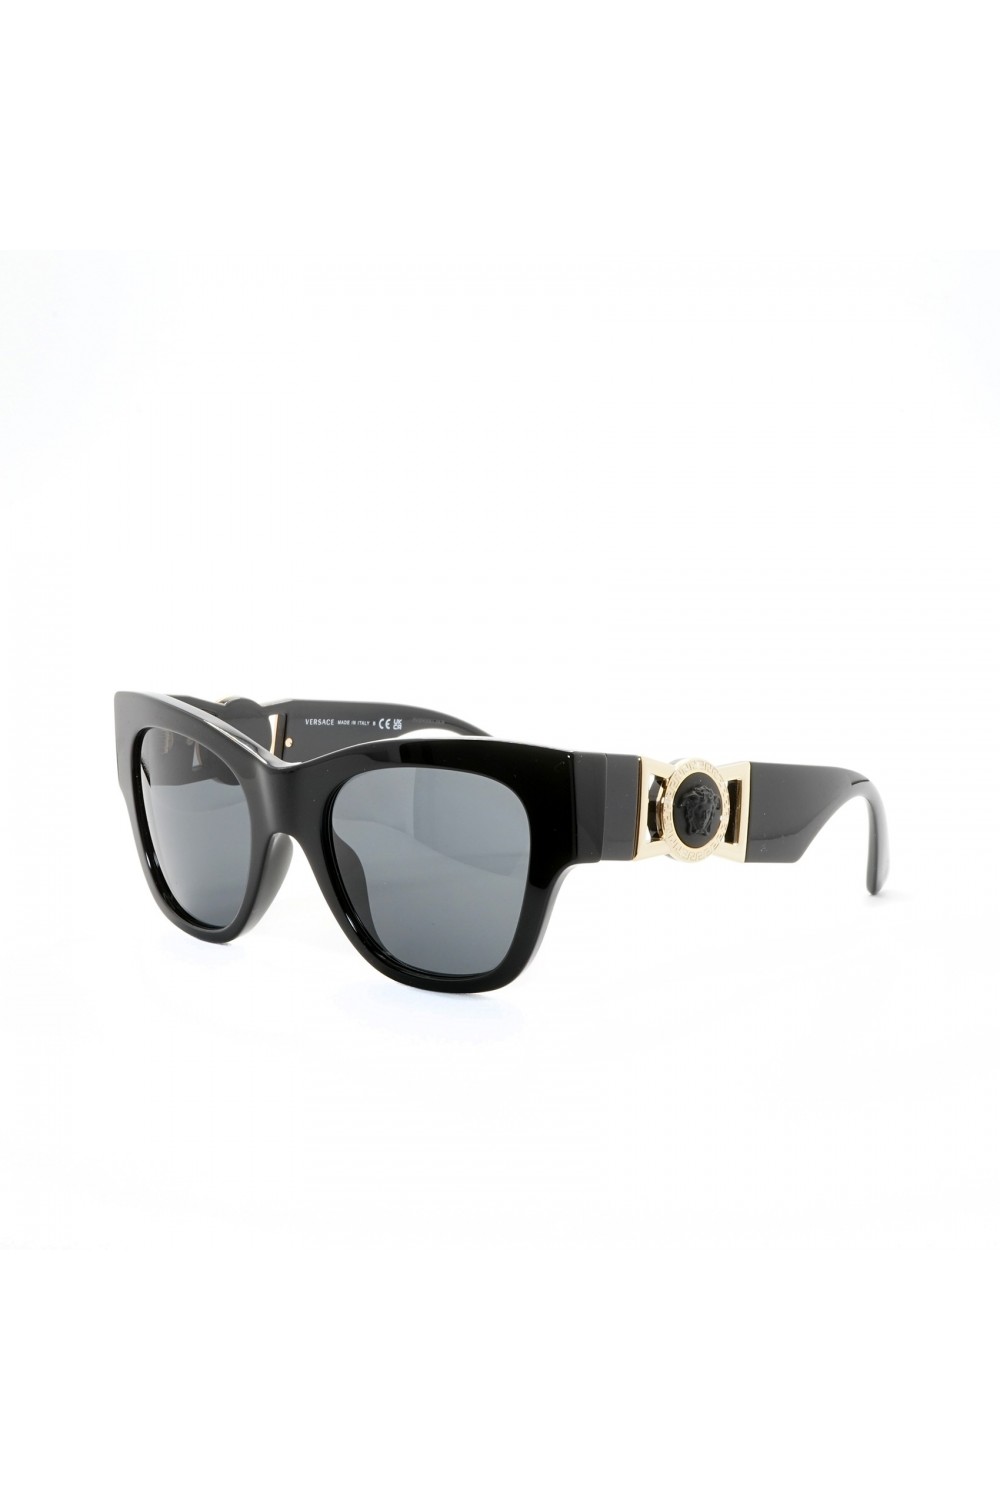 Versace - Occhiali da sole in celluloide squadrati per donna nero - 4415U GB1/87